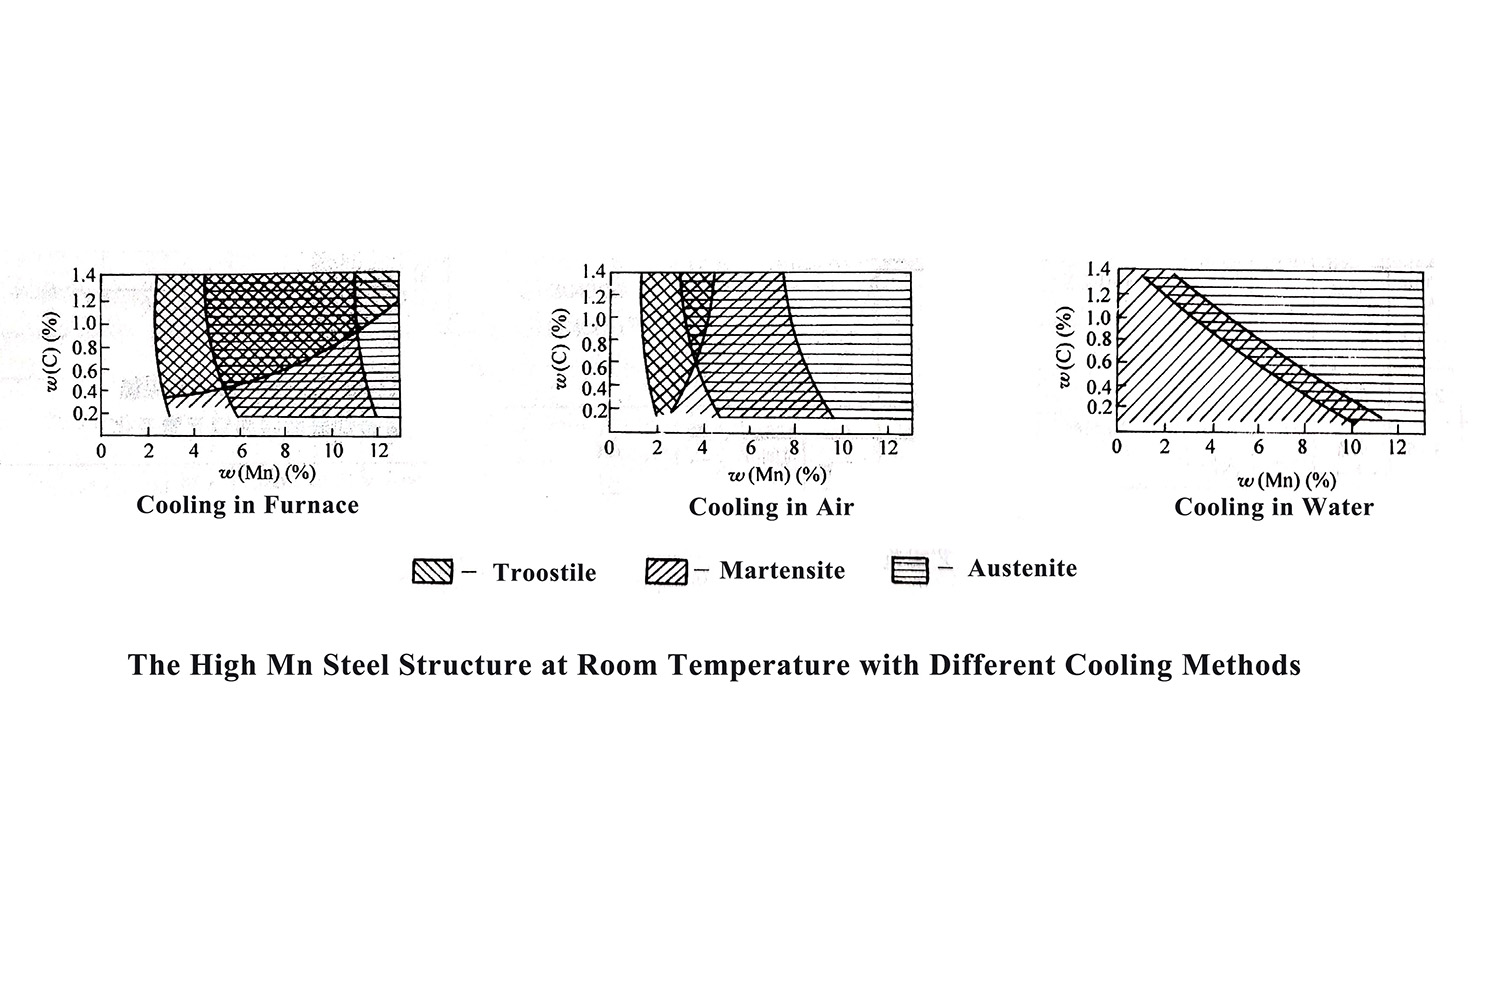 De hoge Mn-staalstructuur bij kamertemperatuur met verschillende koelmethoden